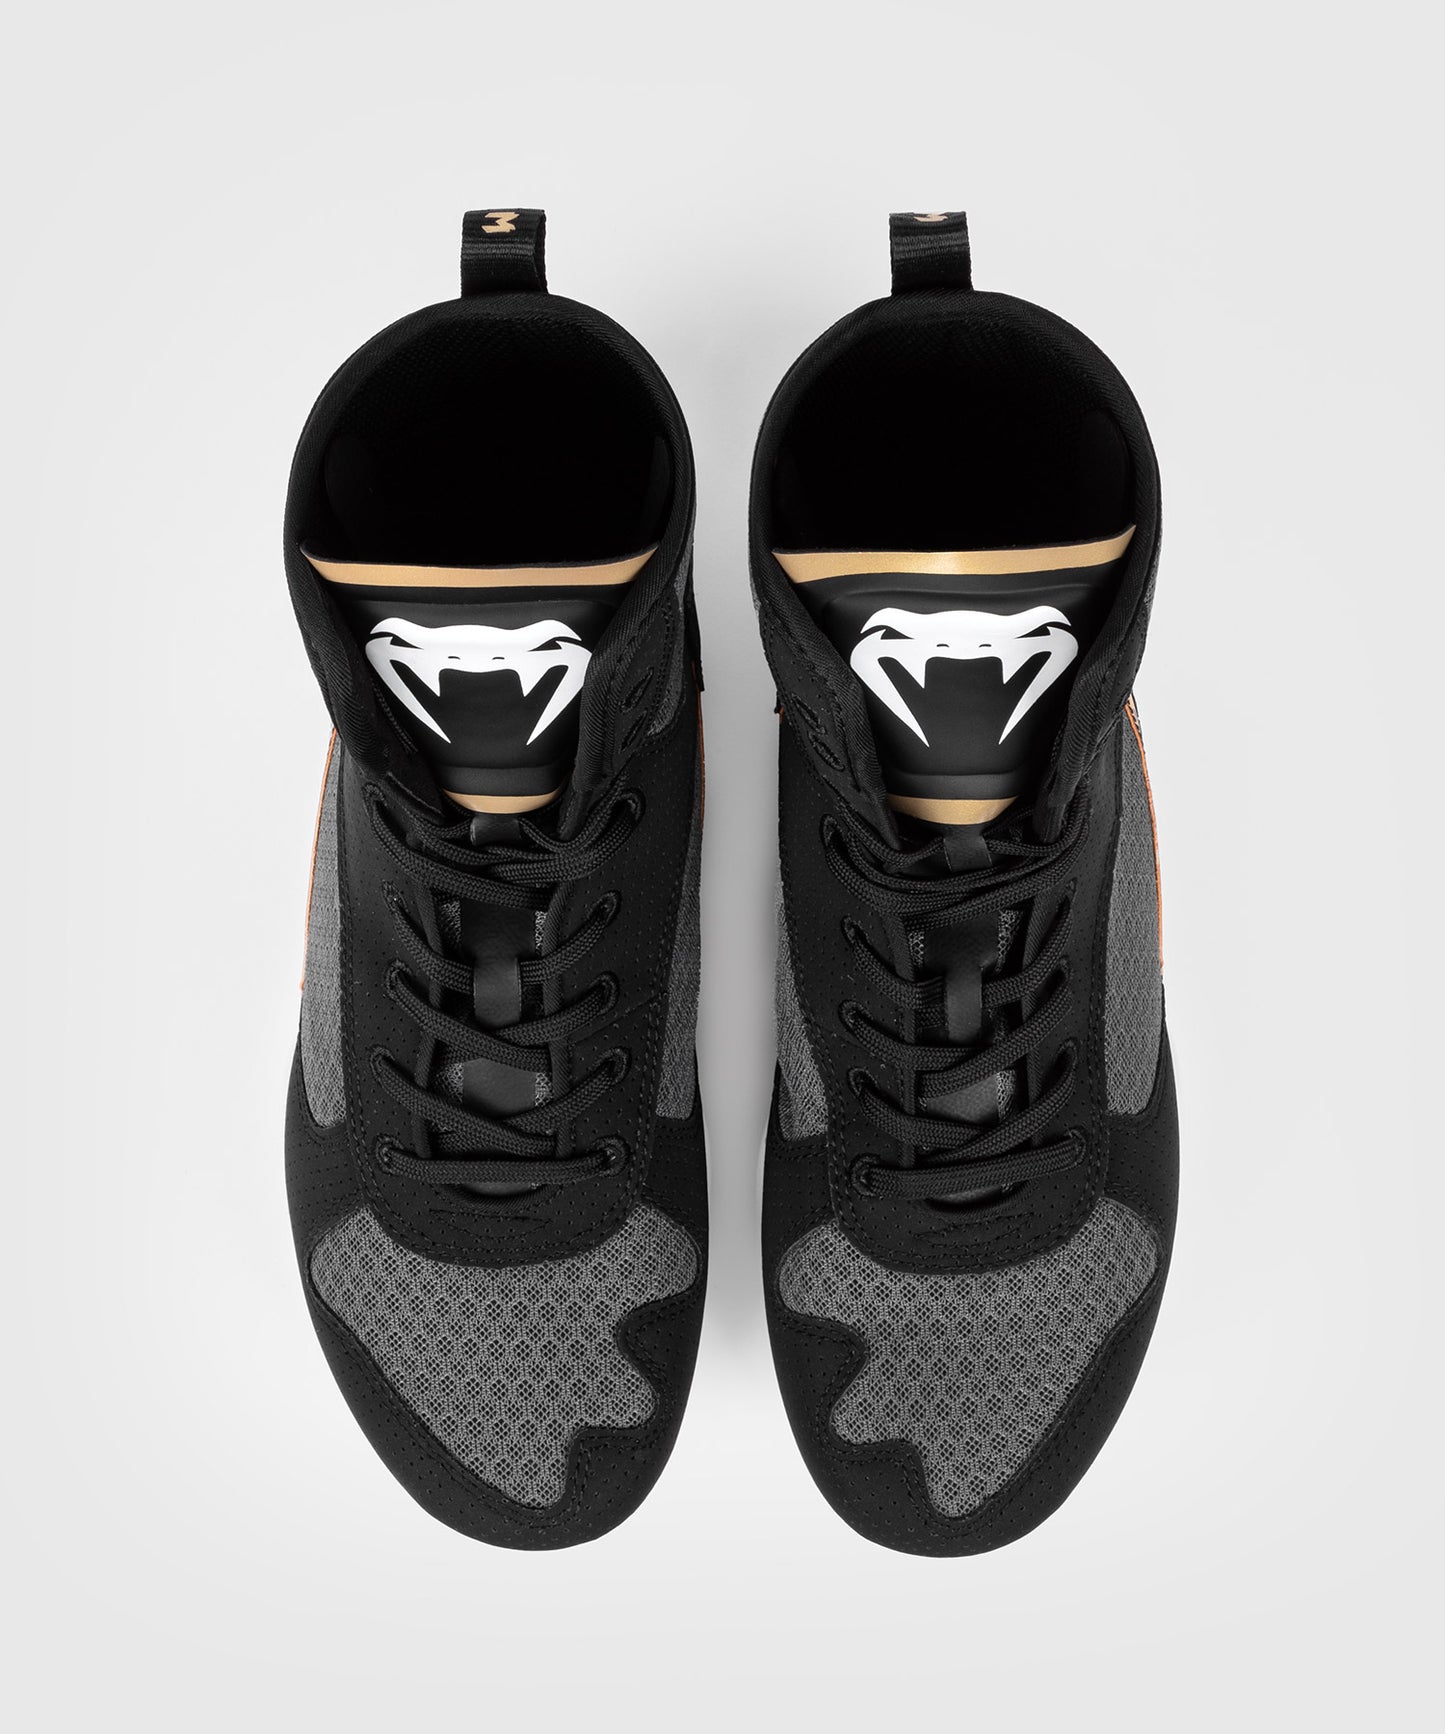 Venum Elite Zapatillas de Boxeo - Negro/Blanco/Oro